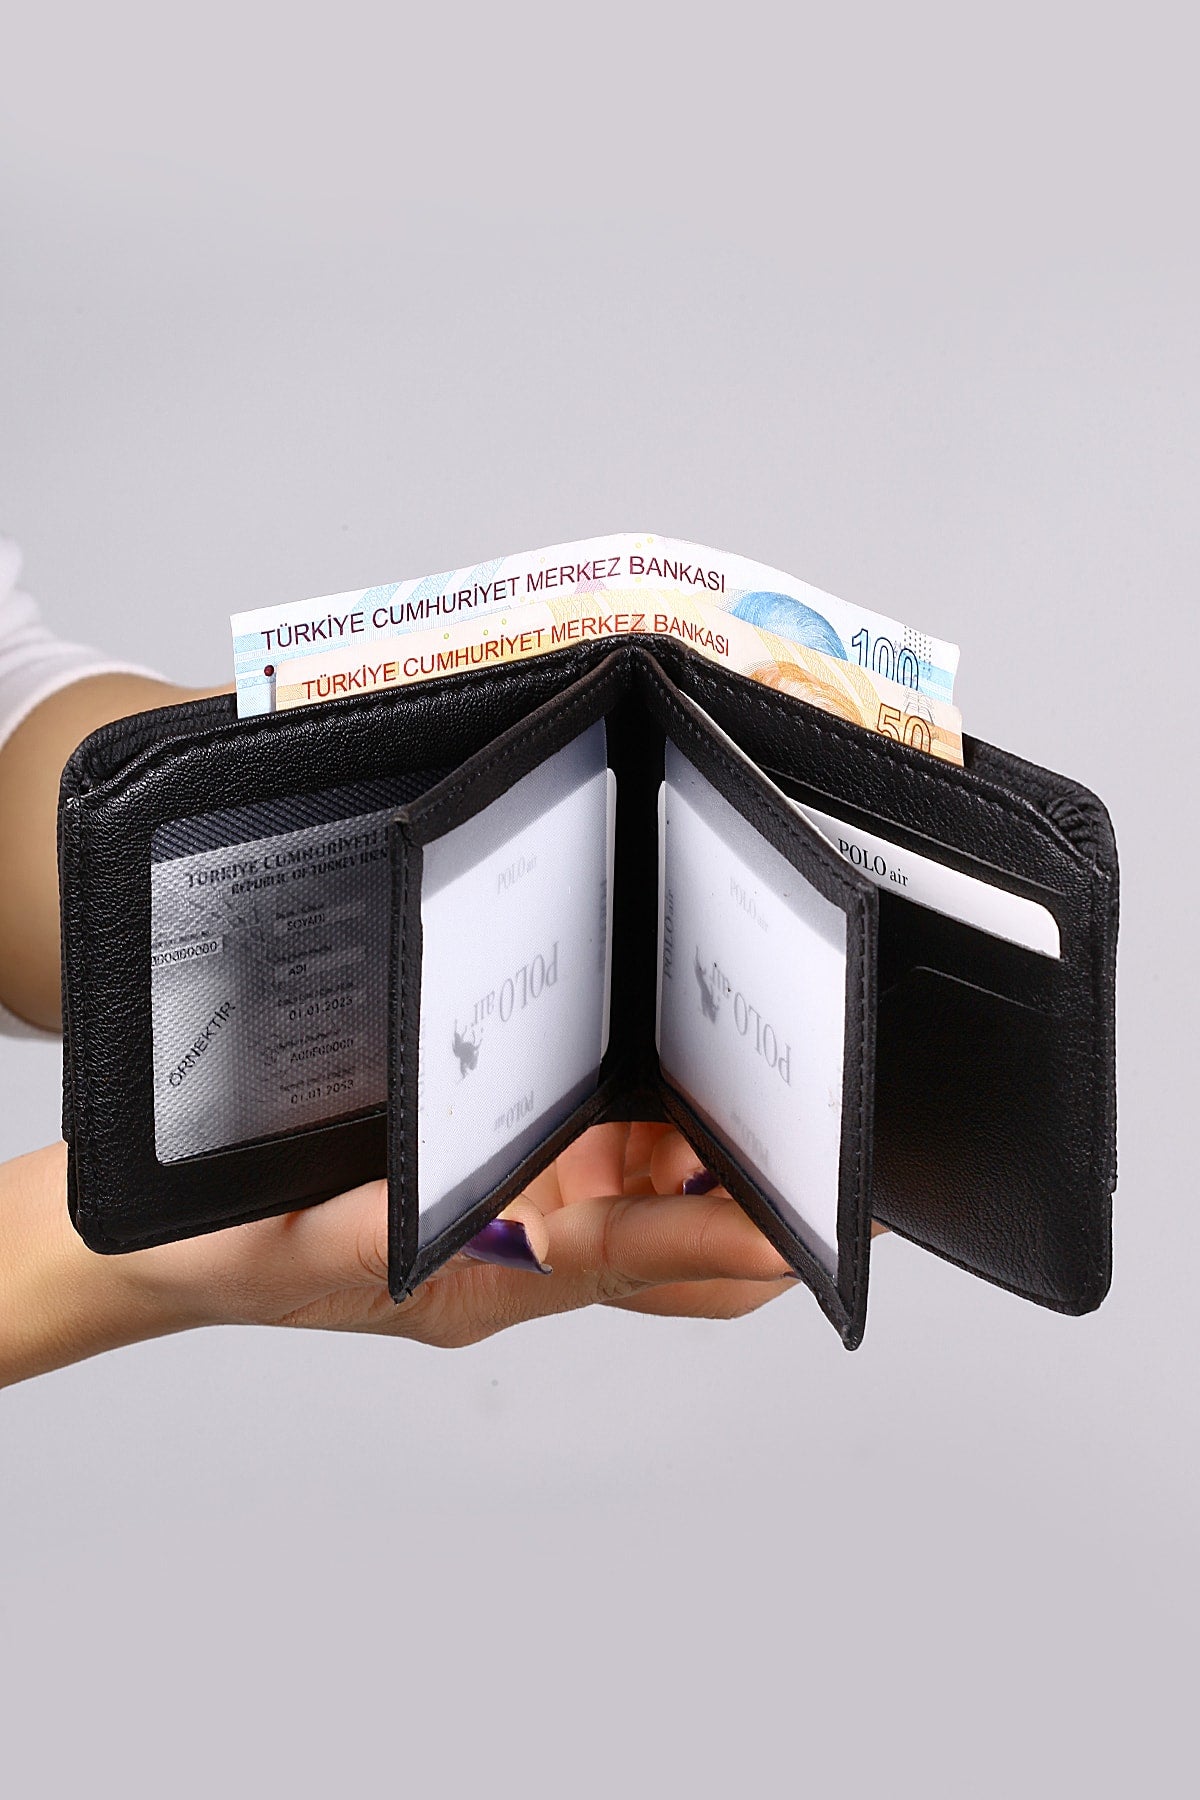 Belt Wallet Card Holder Keychain Lighter Black Set in Gift Box